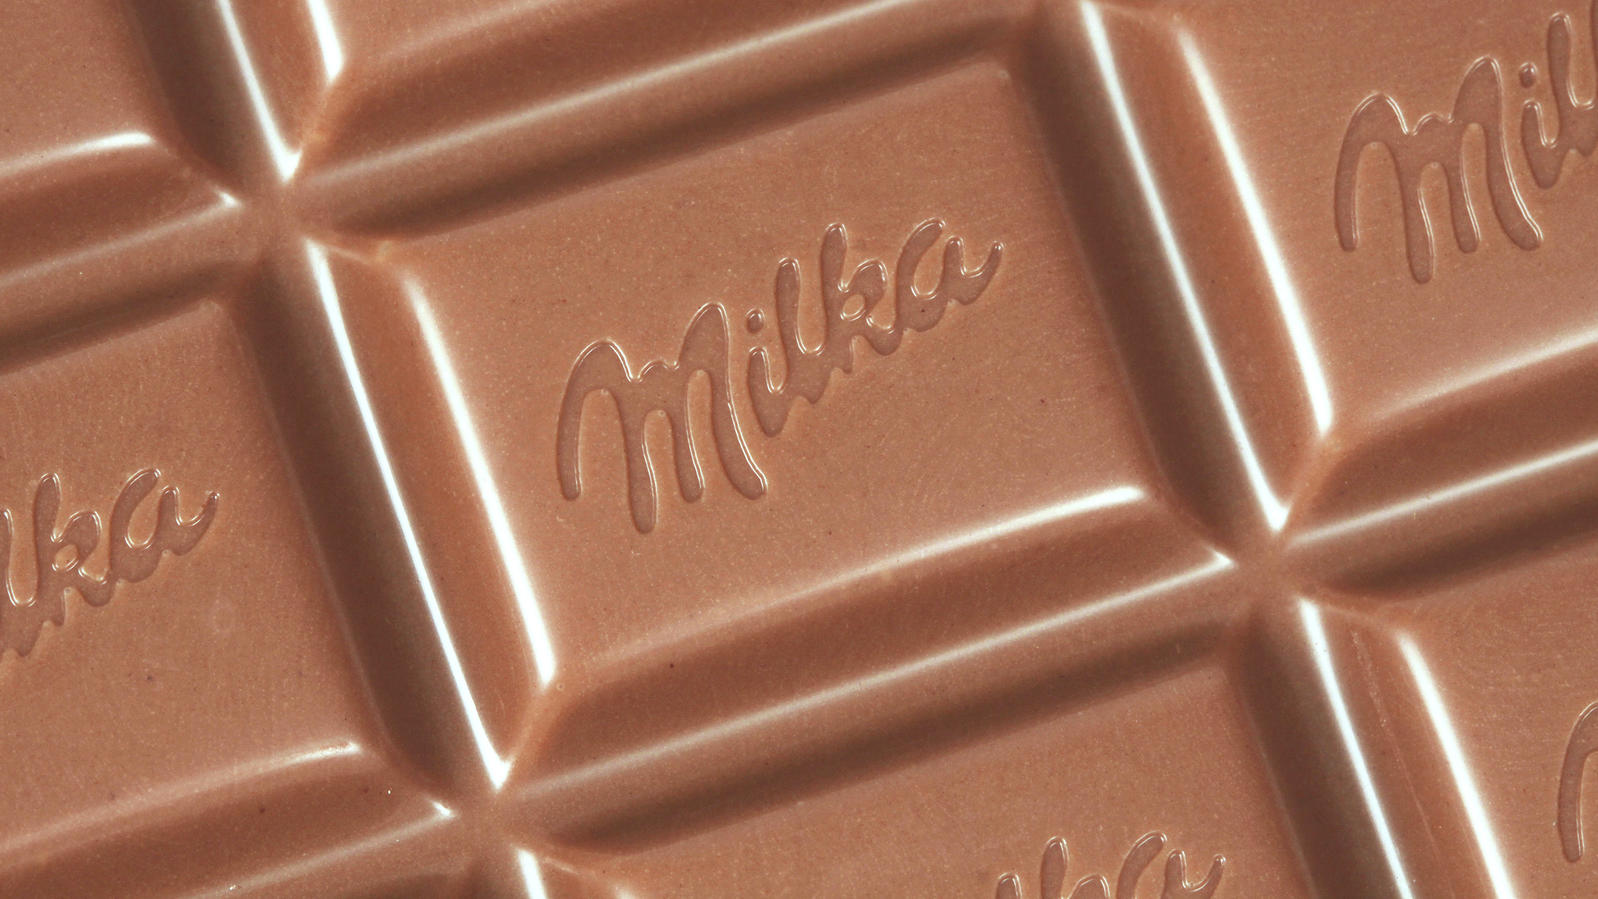 Tafel Schokolade von Milka